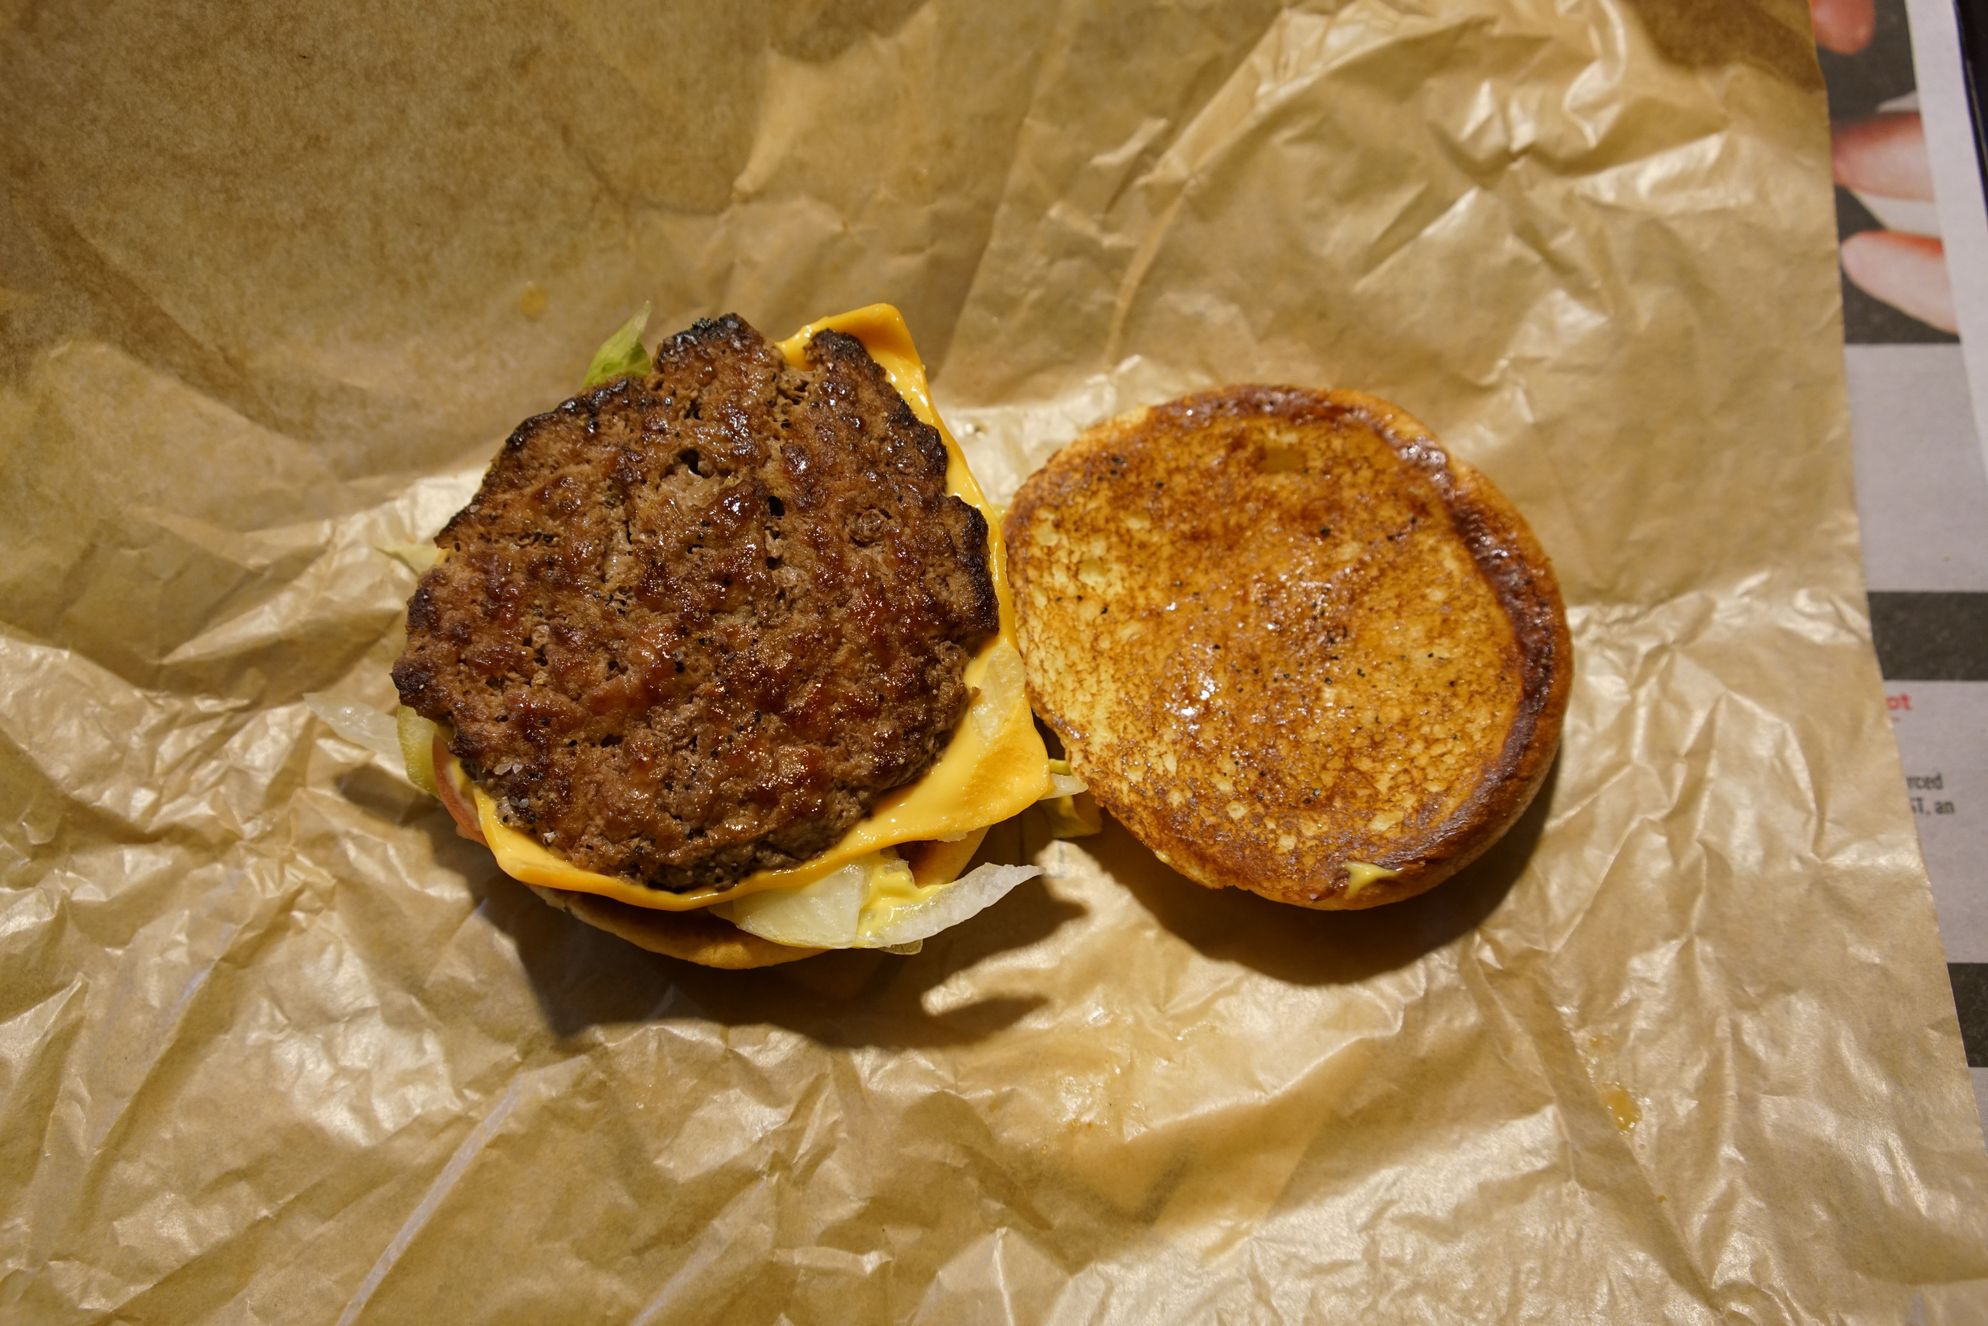 McDonald's Archburger